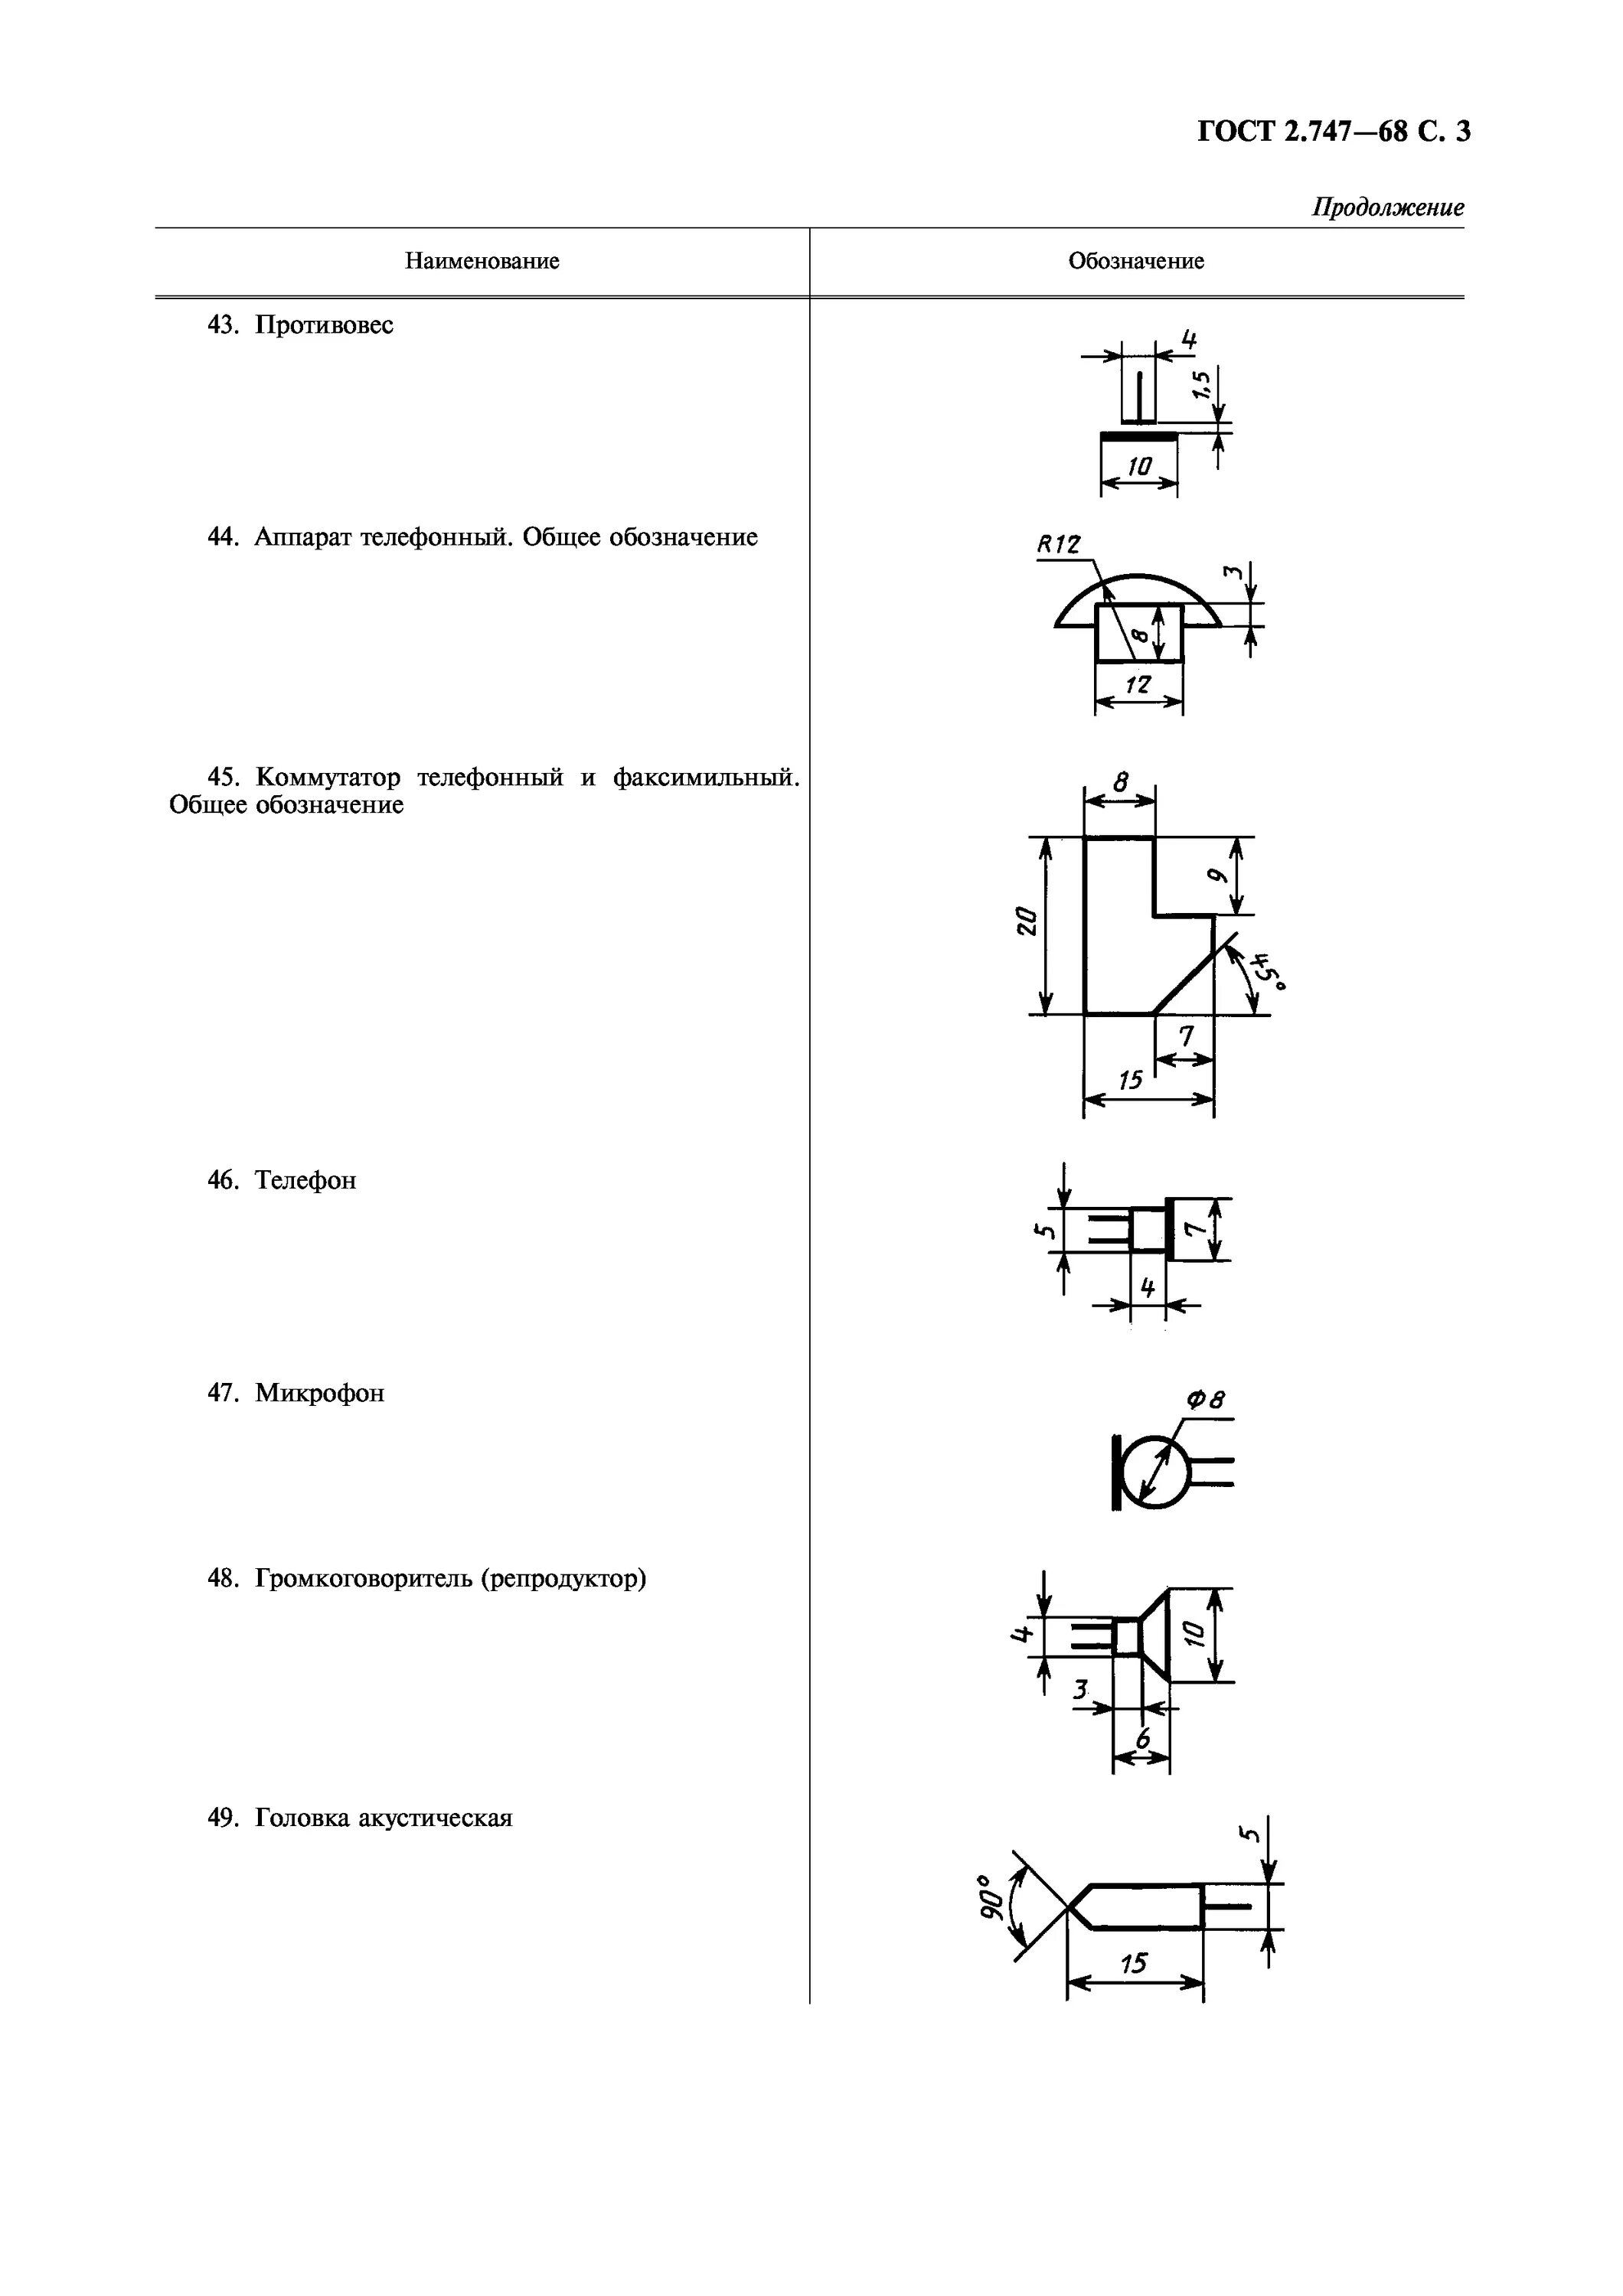 Размеры элементов гост. Уго радиоэлементов ГОСТ. ГОСТ 2.747-68 обозначения условные графические в схемах. Обозначение радиоэлементов на схеме ГОСТ. ЕСКД Уго на электрических схемах обозначается .